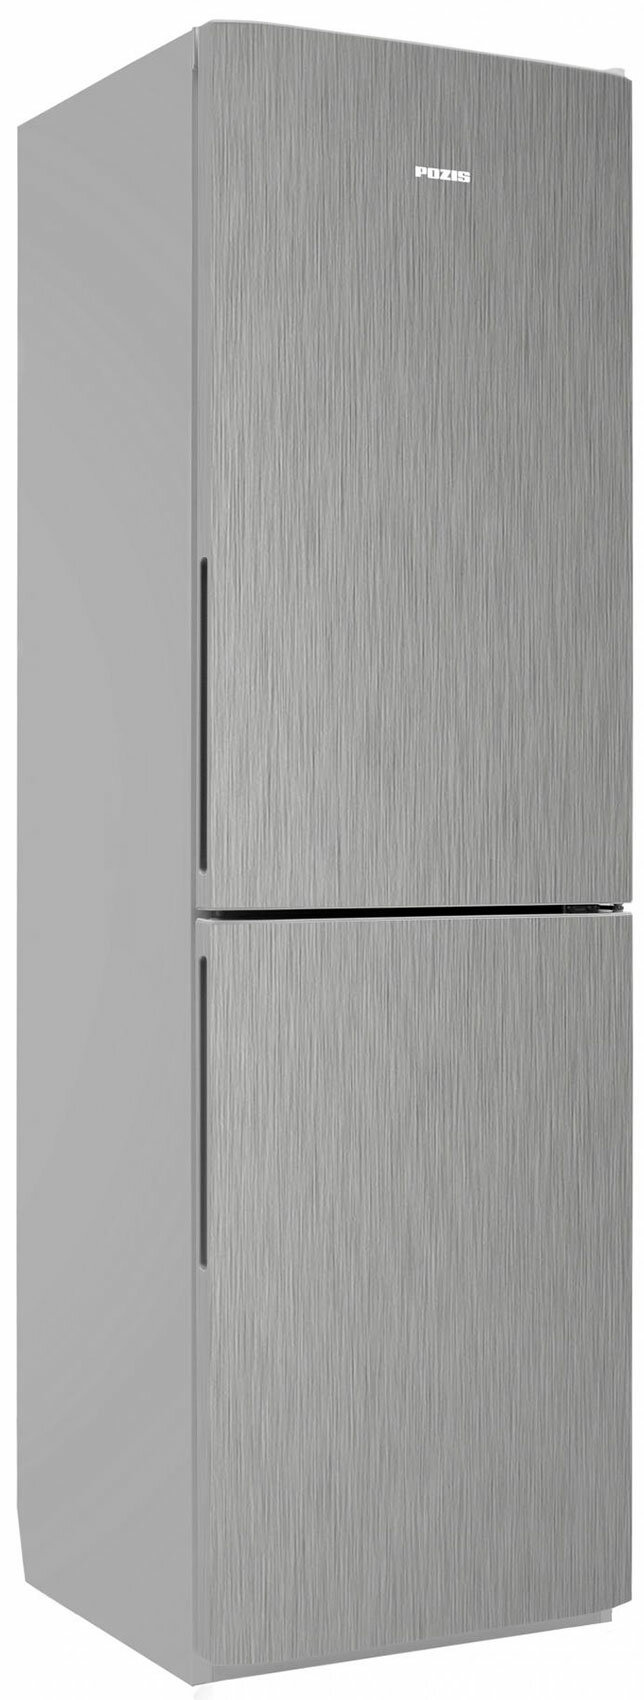 Двухкамерный холодильник Позис RK FNF-172 серебристый металлопласт ручки вертикальные